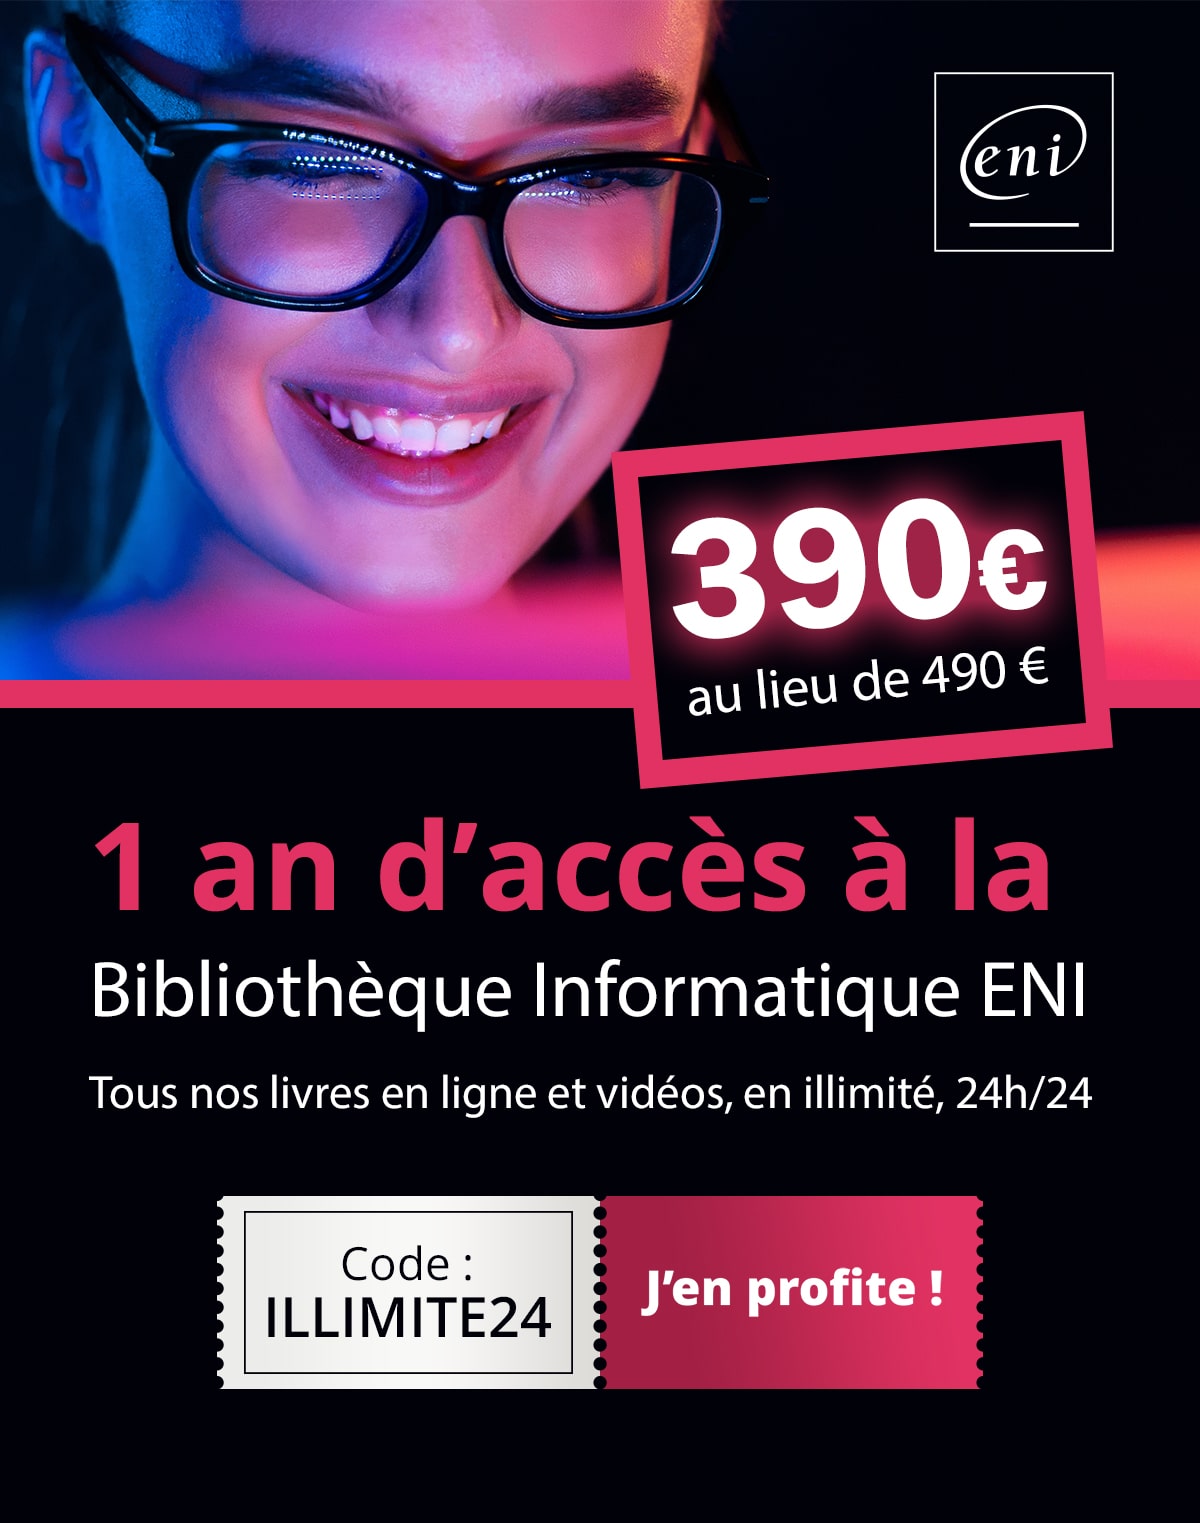 1 an d'accès à la Bibliothèque Numérique ENI, à 390€*